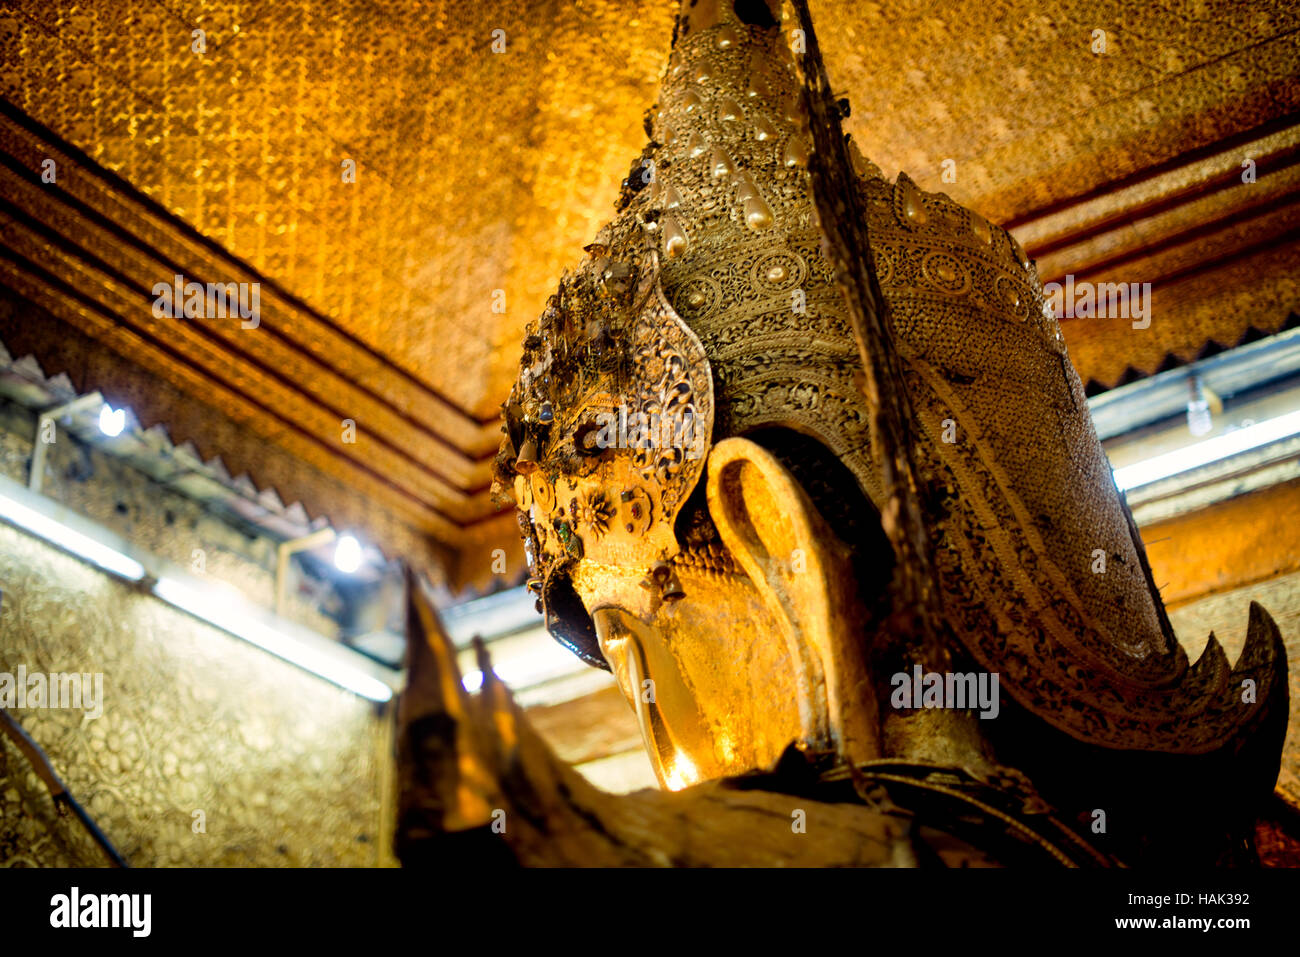 MANDALAY, Myanmar - mahamuni Buddha Tempel (auch als Mahamuni Pagode genannt) ist eine hochverehrte religiöse Stätte in Mandalay. Herzstück ist der Mahamuni Buddha Bild, angeblich eine von nur fünf ursprünglichen Bildnisse des Buddha zu Lebzeiten gemacht werden. Es ist in gold Folie überzogen als Tribute von Gläubigen und Pilgern gespendet. Stockfoto